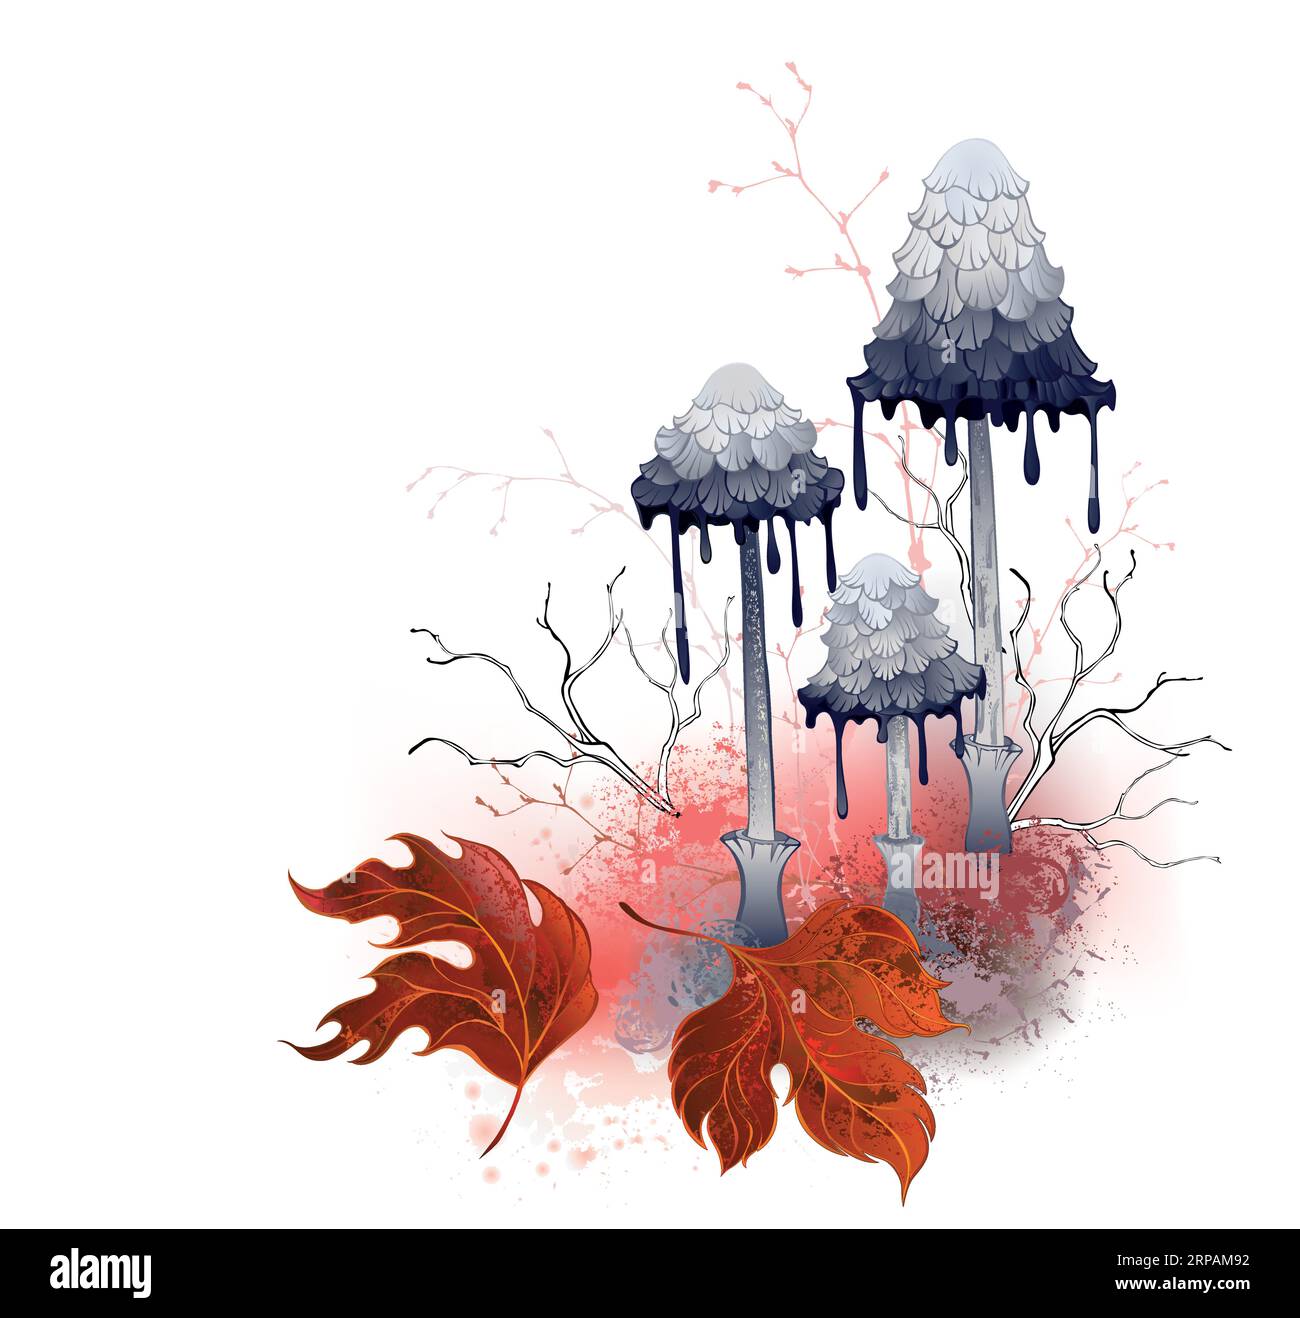 Composizione di funghi d'inchiostro grigi, disegnati artisticamente, su glade di muschio con autunno rosso, foglie testurizzate su sfondo bianco. Design autunnale con funghi Illustrazione Vettoriale